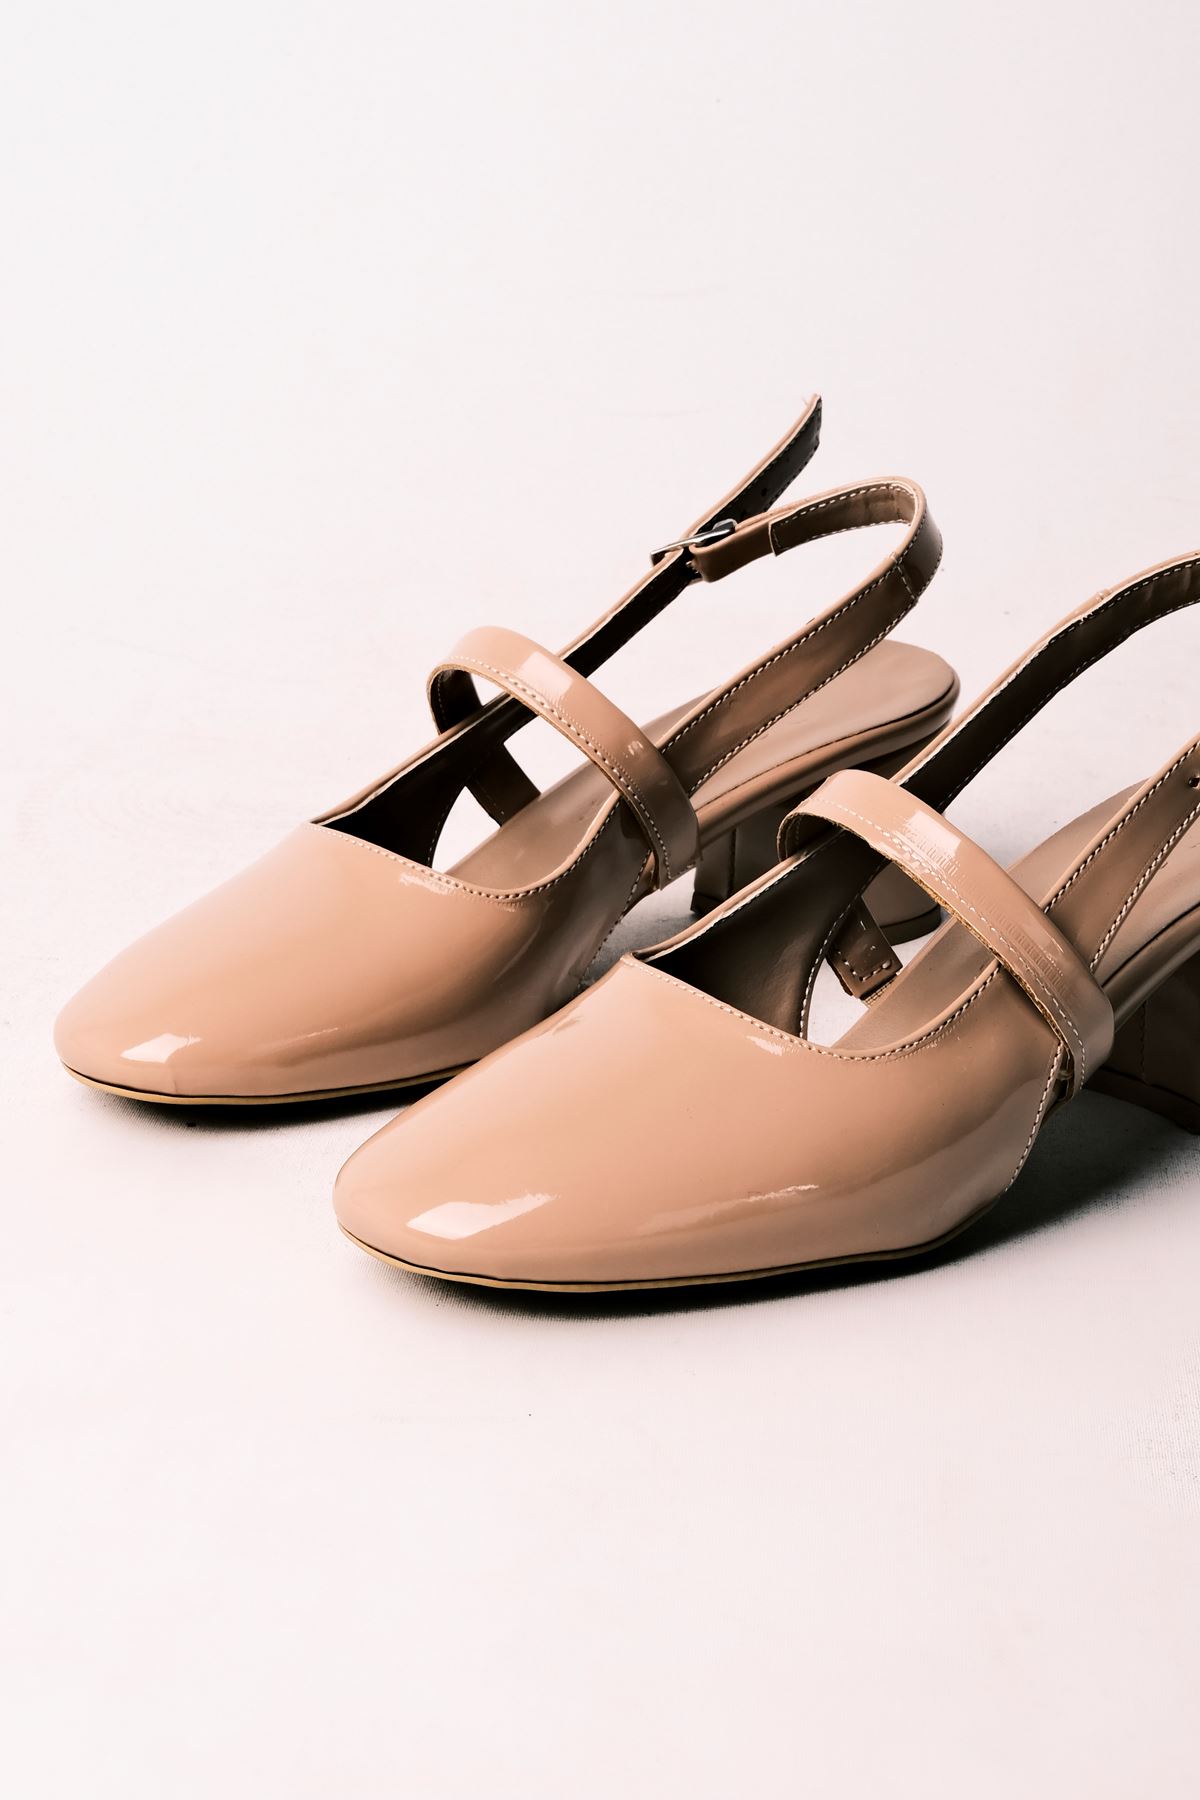 Biana Kadın Topuklu Ayakkabı Bant Detaylı-R.NUDE